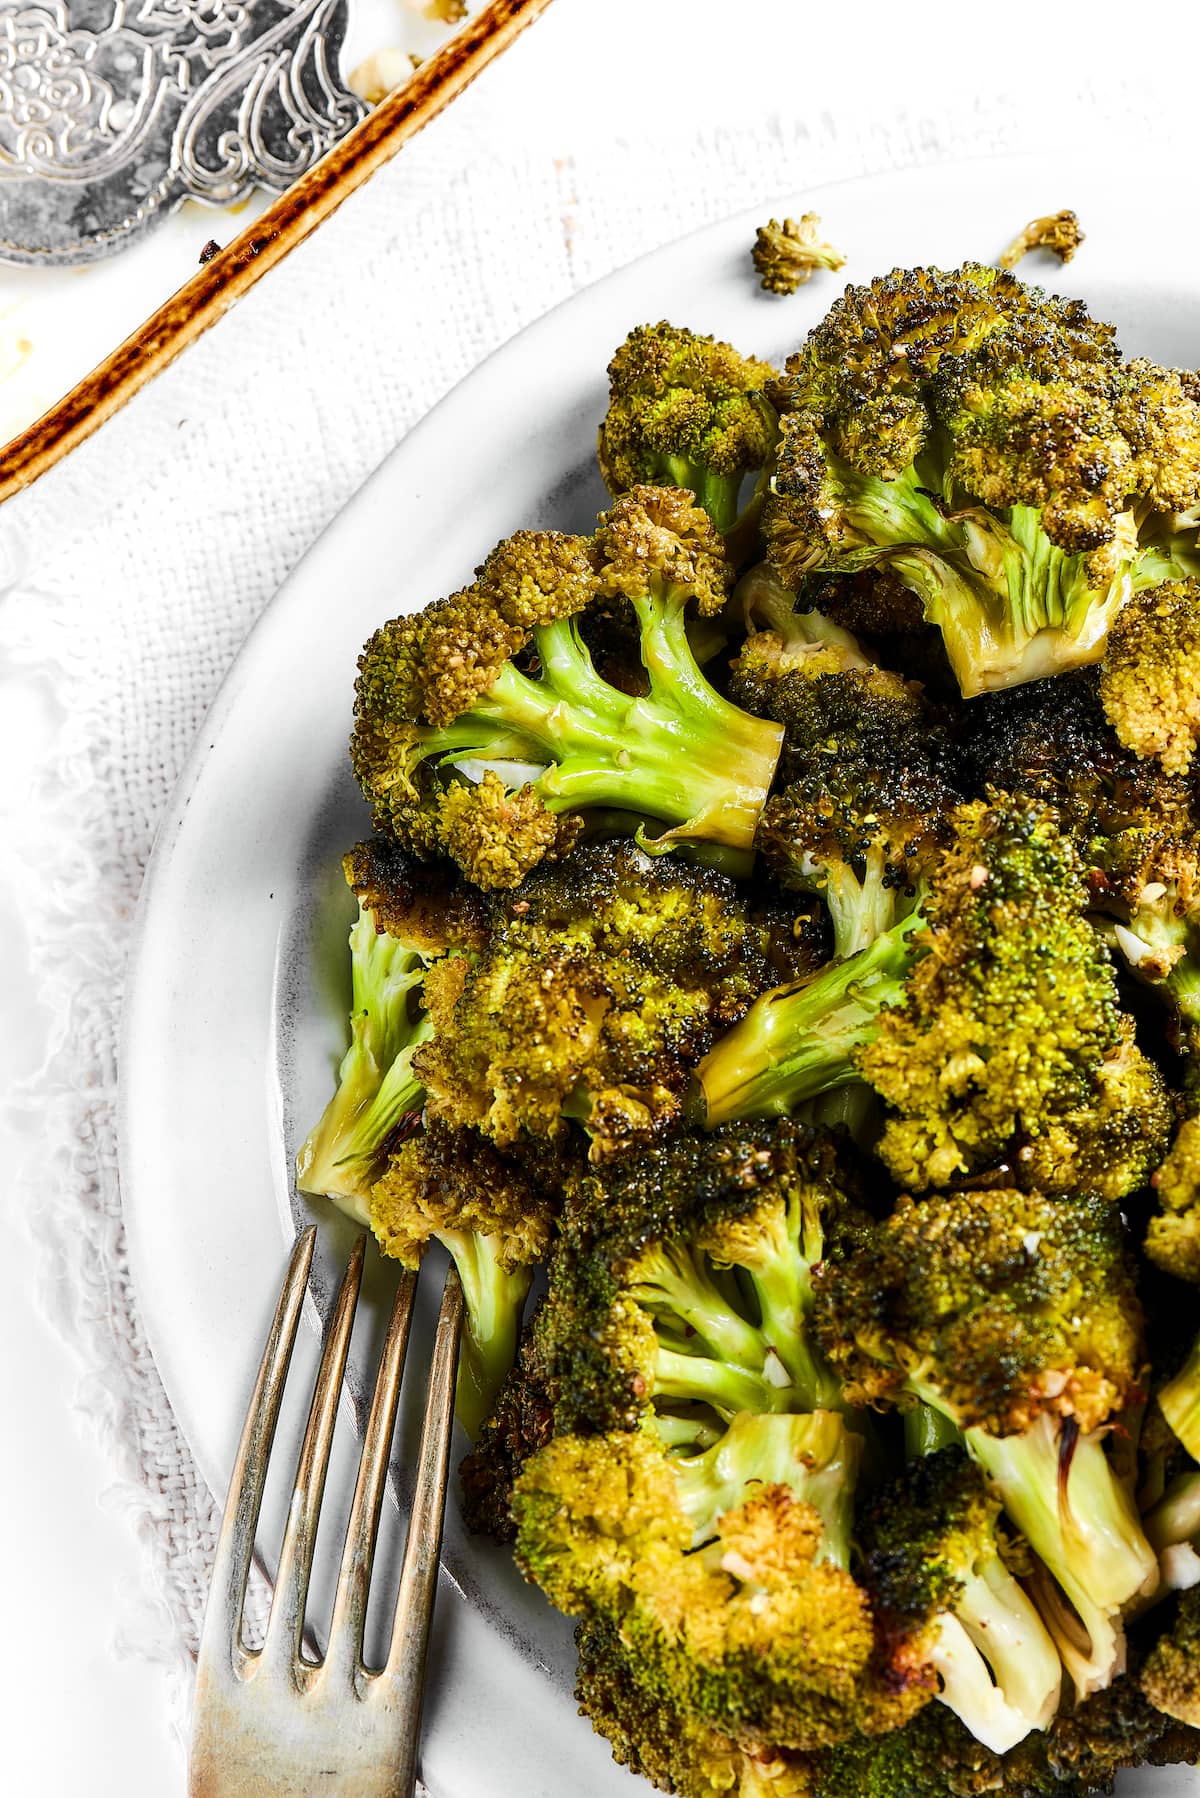 Baked broccoli ideas